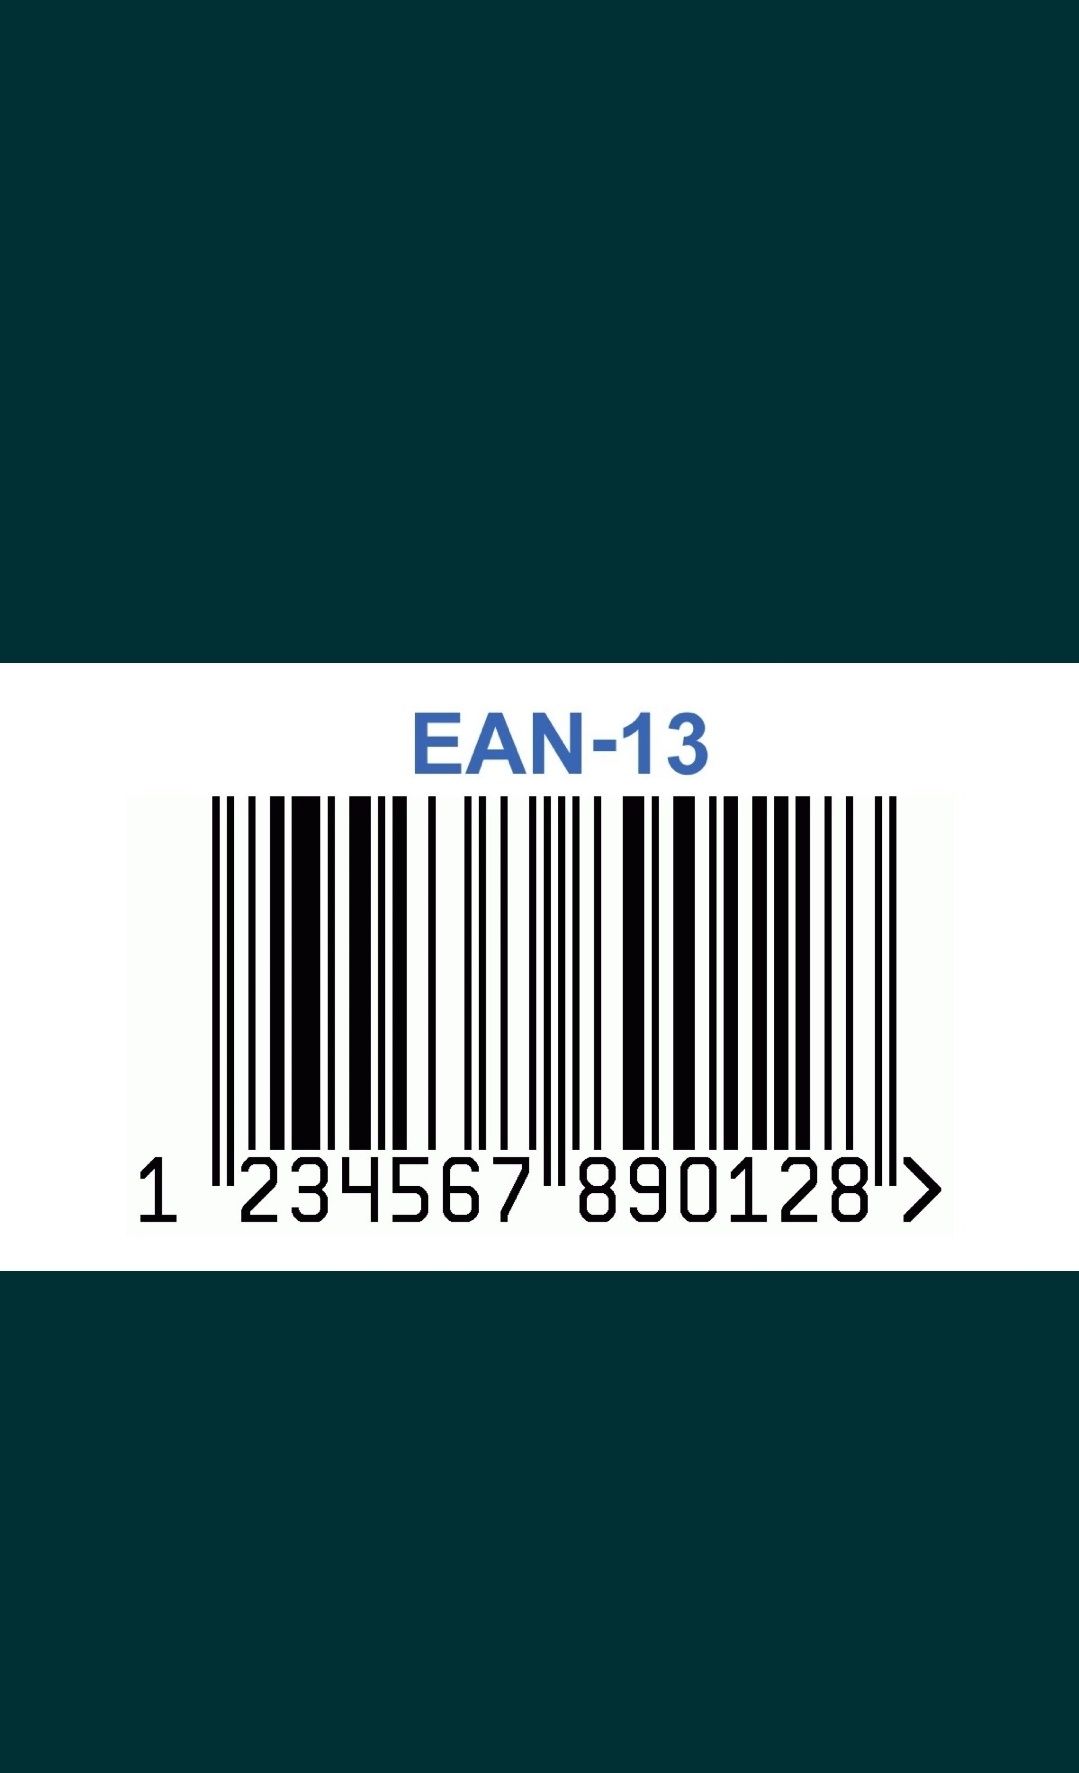 Coduri EAN13 GS1